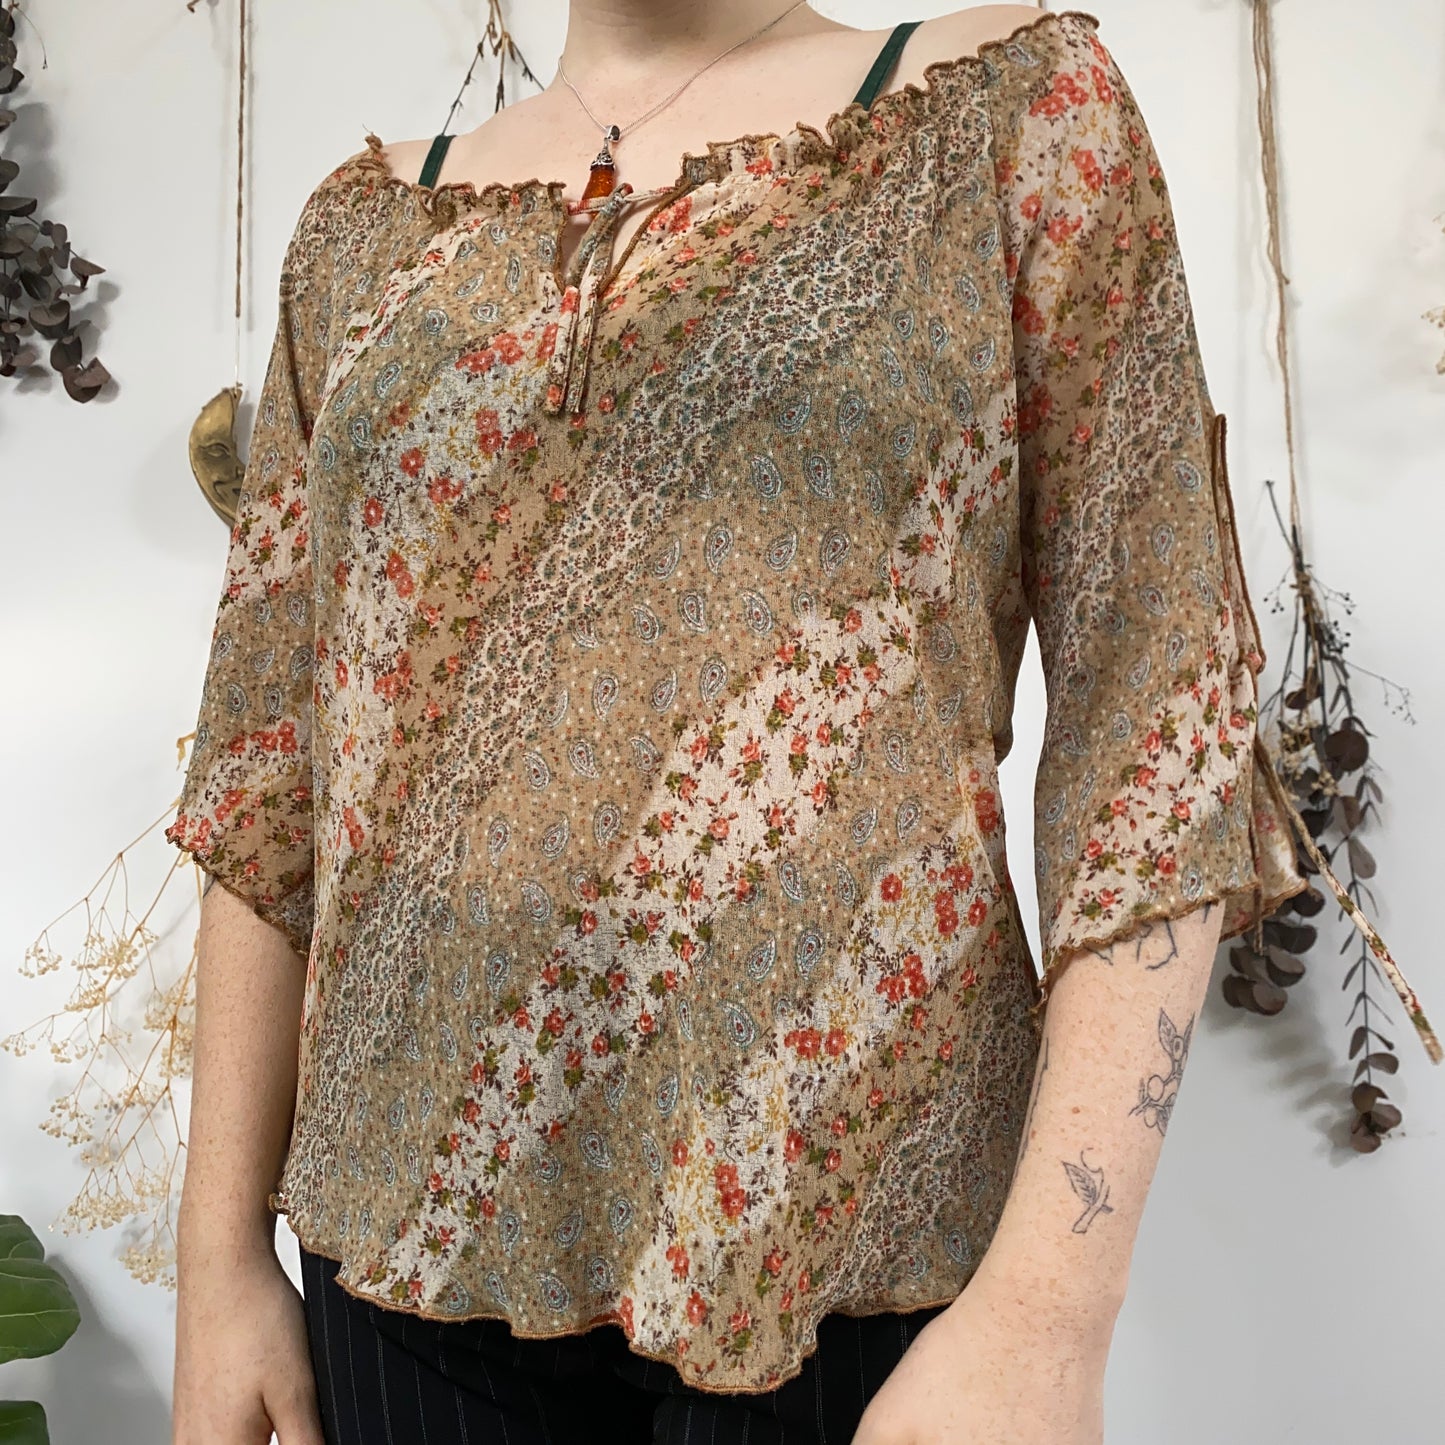 Floral mesh blouse - size XL/XXL